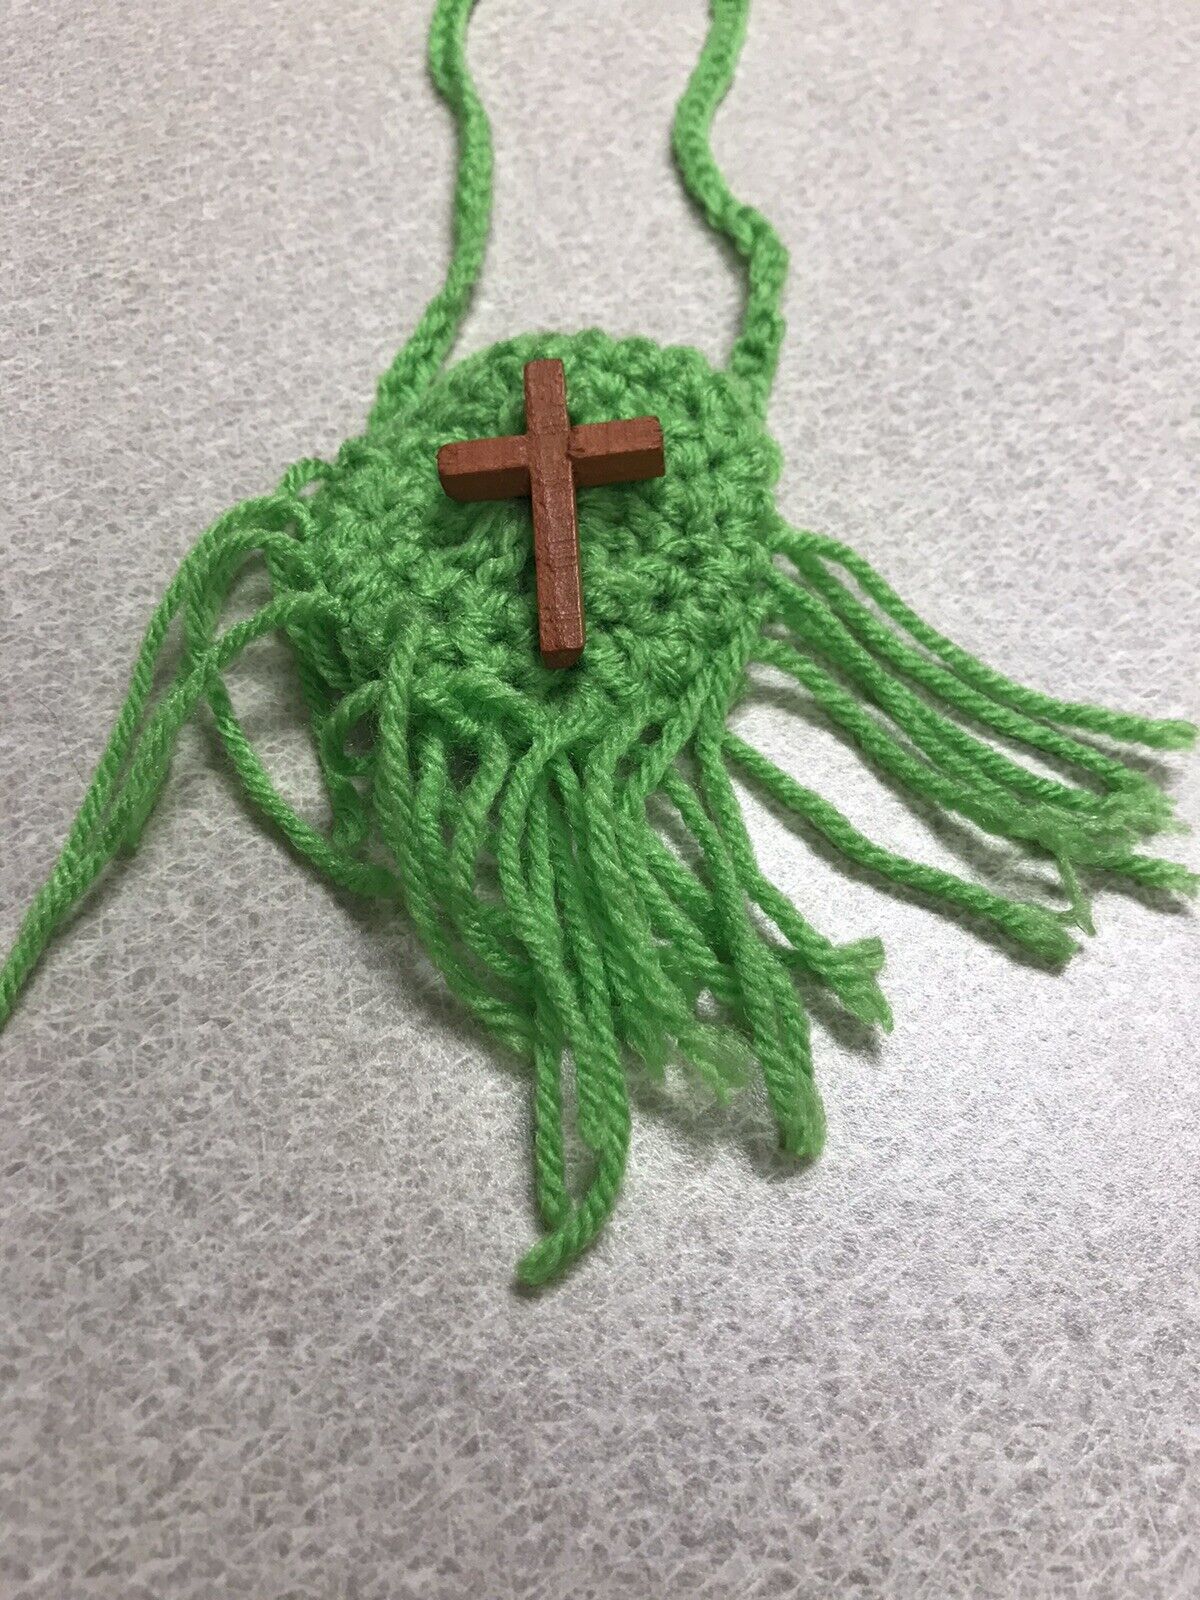 Green Crochet Cross Prayer Pouch Necklace Handmade Original Grannycore